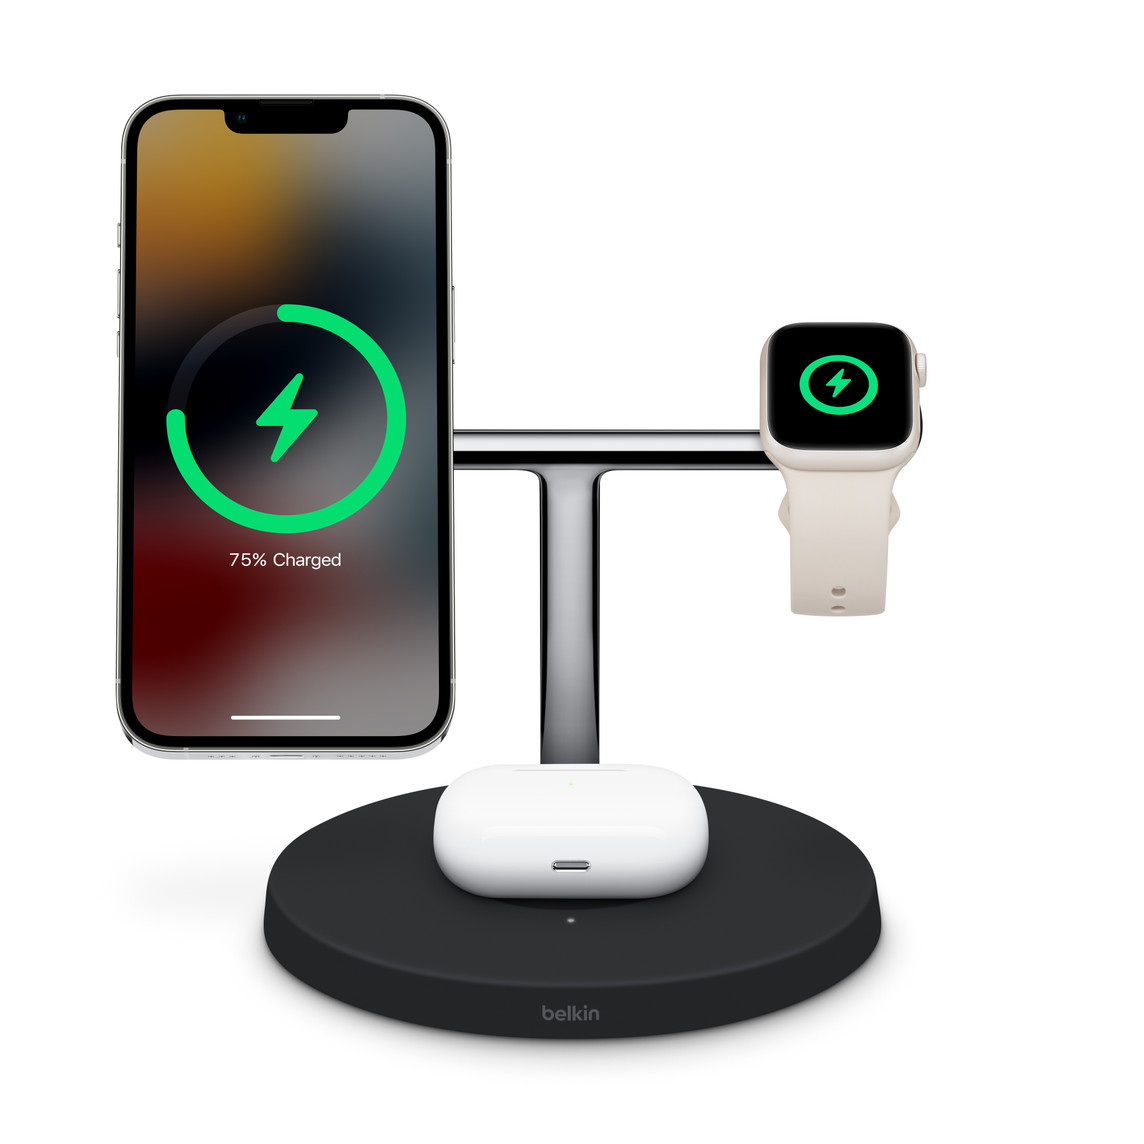 支持 MagSafe 的 Belkin Boost Charge Pro 三合一无线充电器可同时为 iPhone、Apple Watch 和适用于 AirPods 的无线充电盒充电。